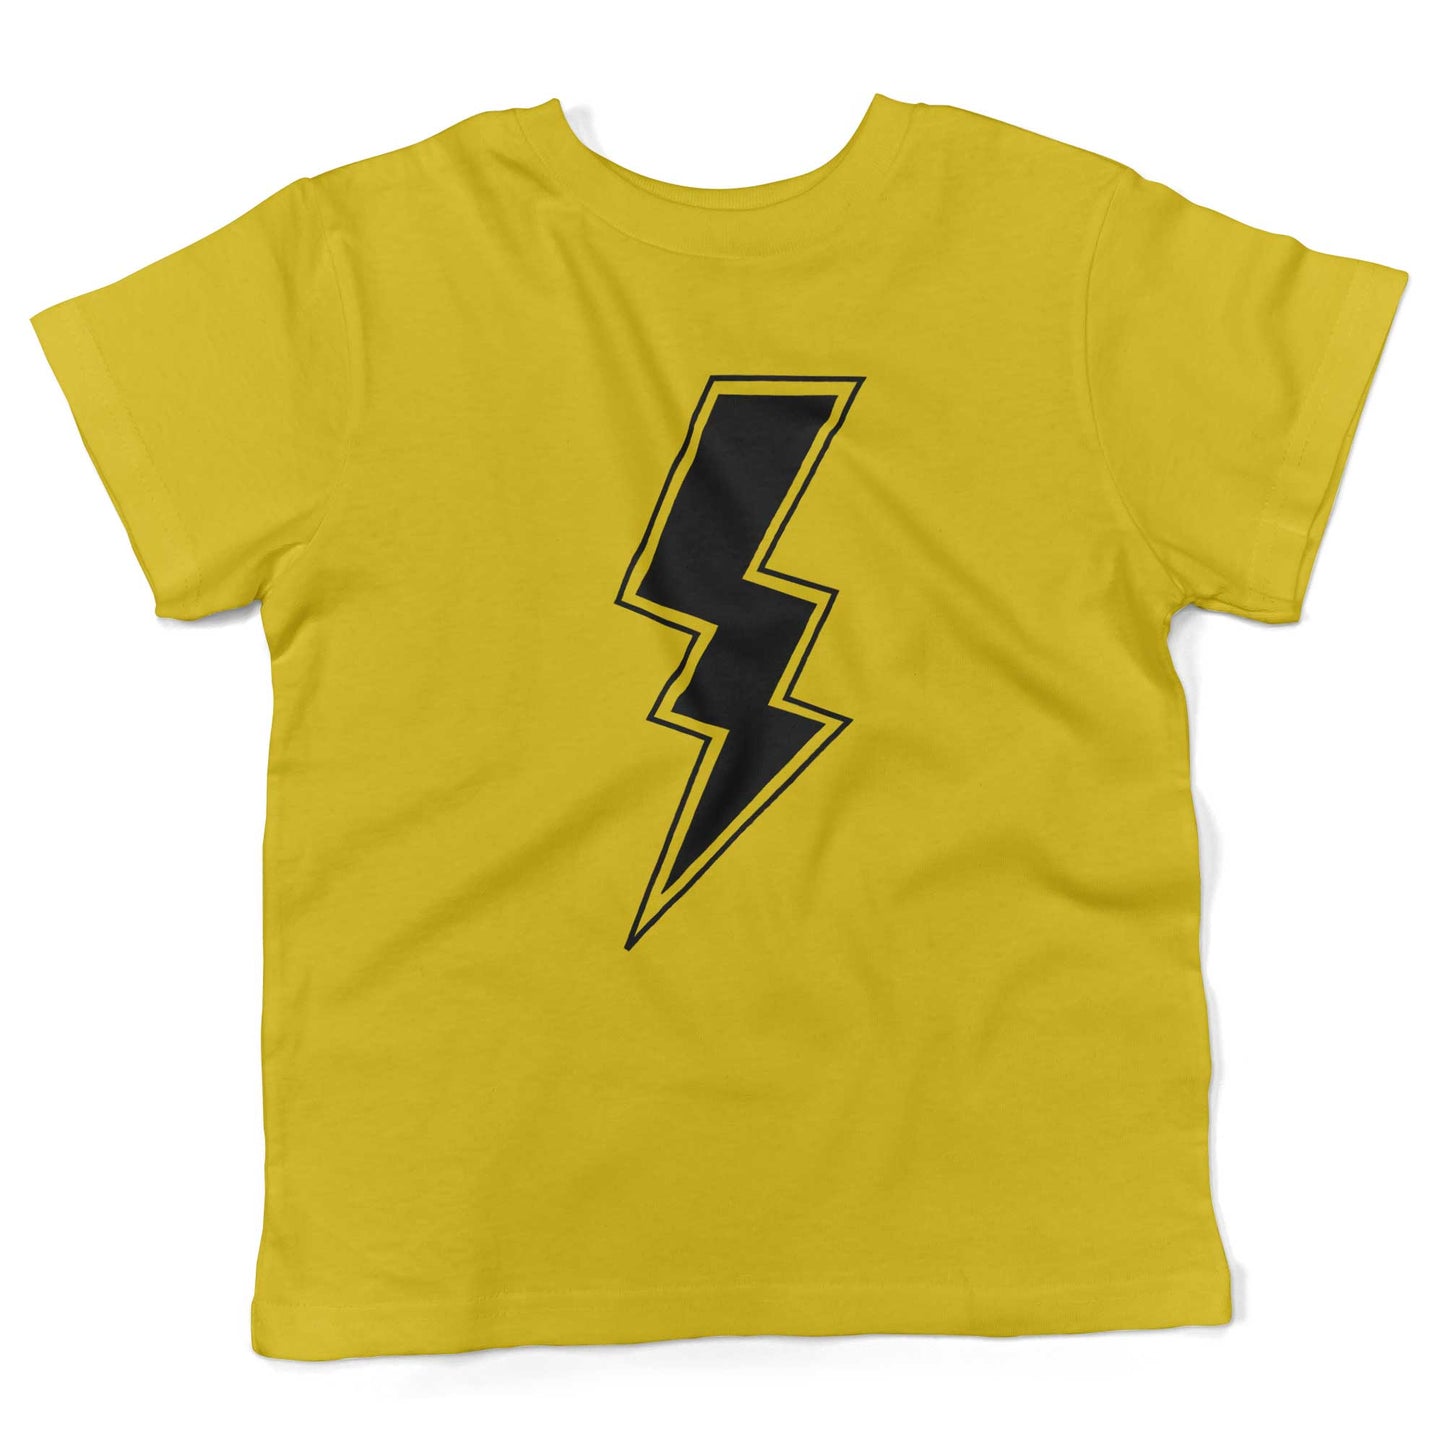 Giant Lightning Bolt Toddler Shirt-Sunshine Yellow-2T